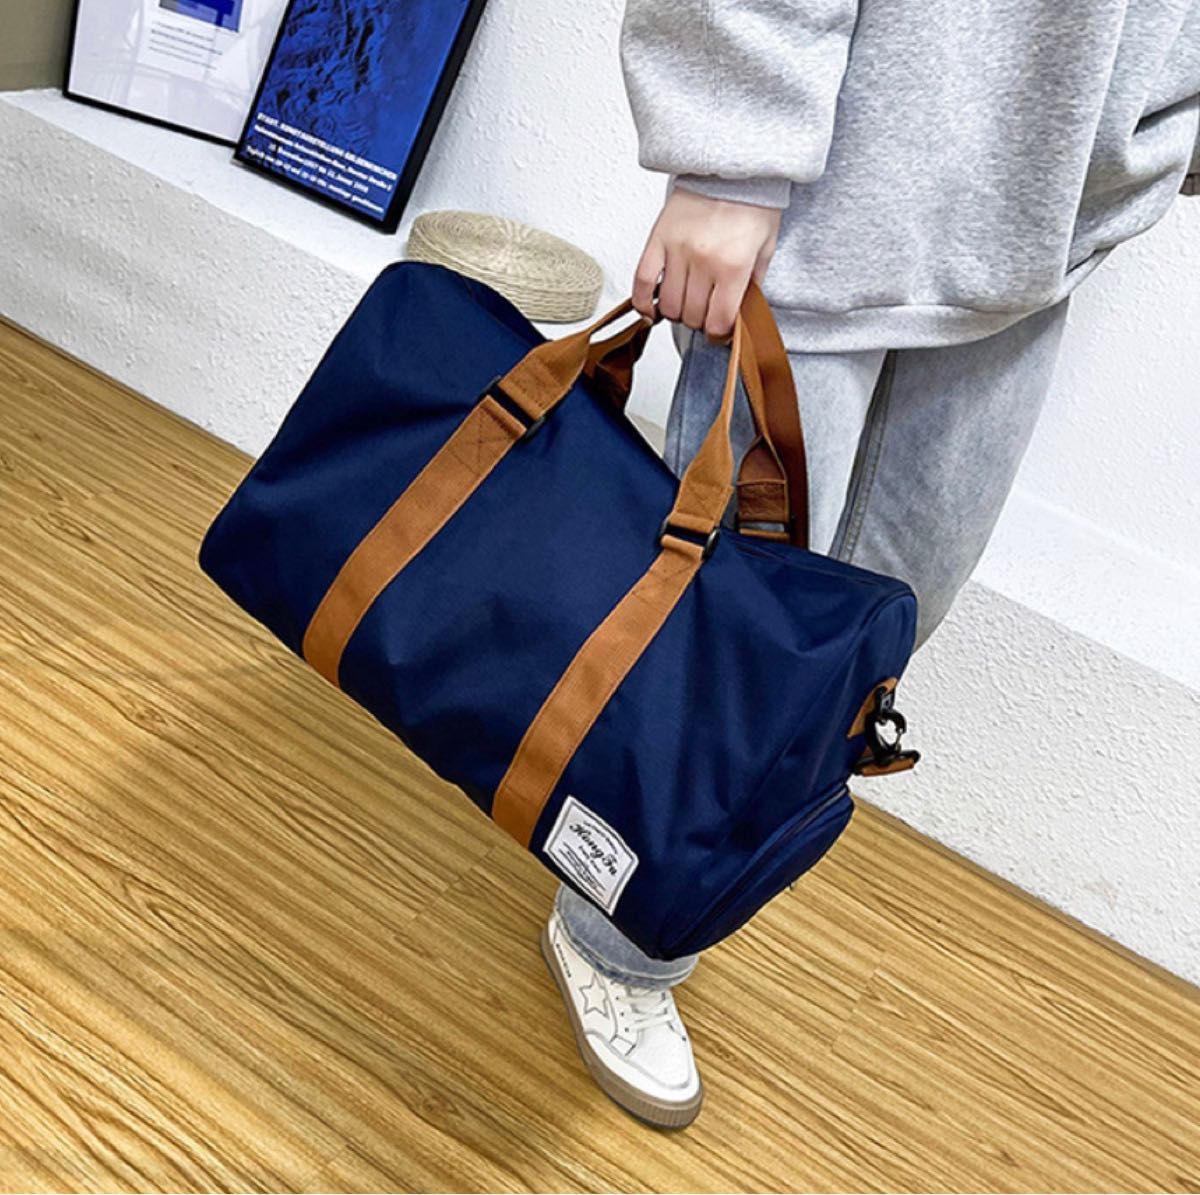 ボストンバッグ 2WAY 大容量 トラベルバッグ 旅行バッグ 洗える ジムバッグ スポーツバッグ ネイビー 紺色 男女兼用